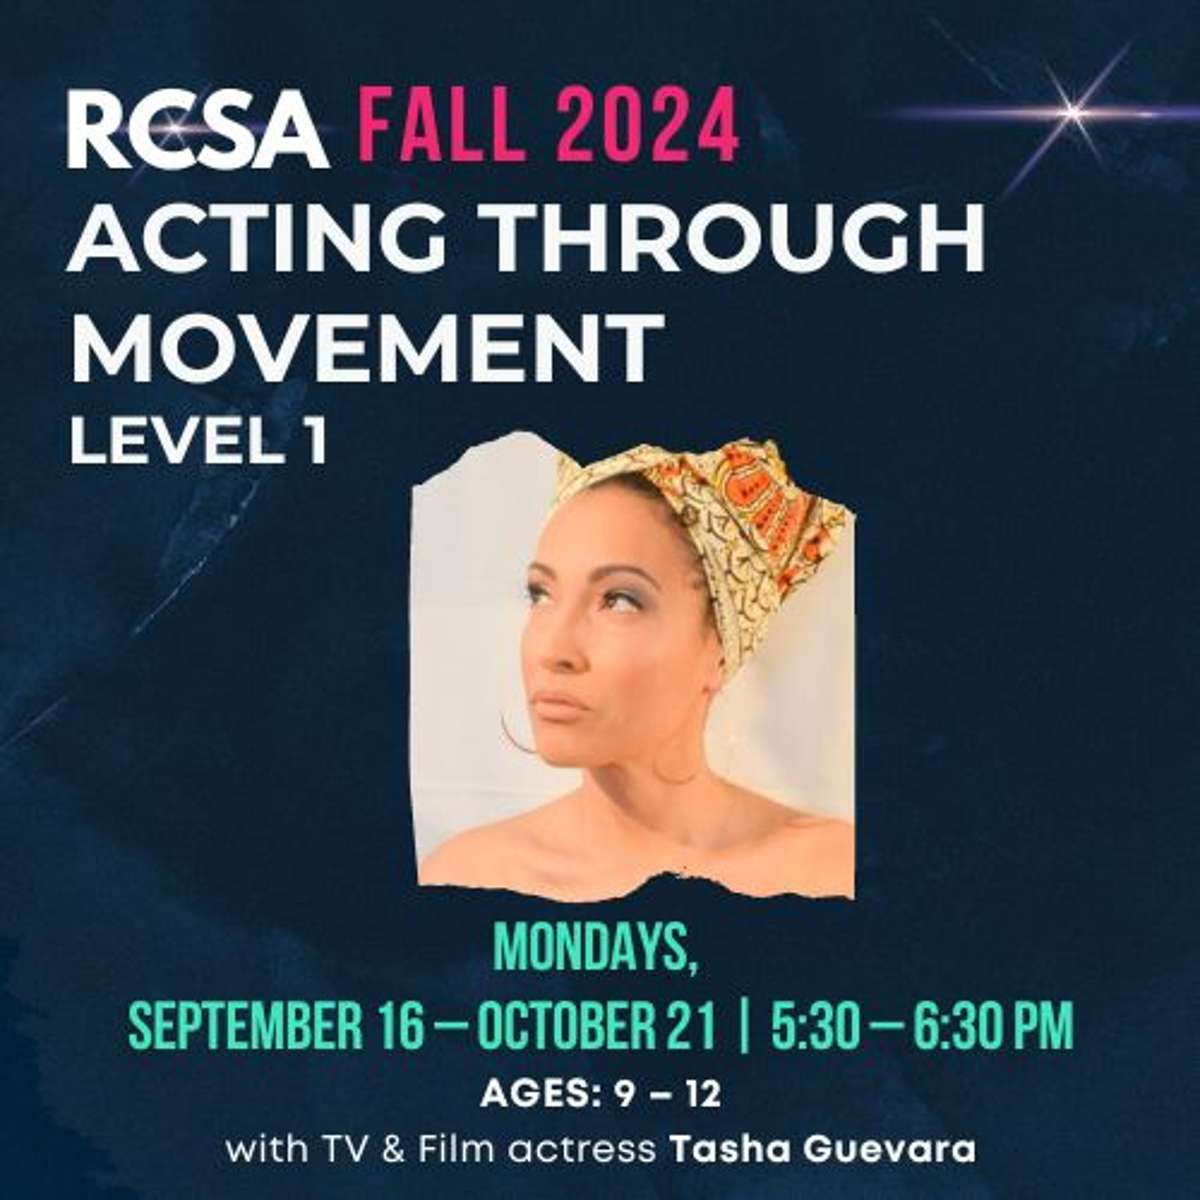 RCSA Fall 2024 Classes